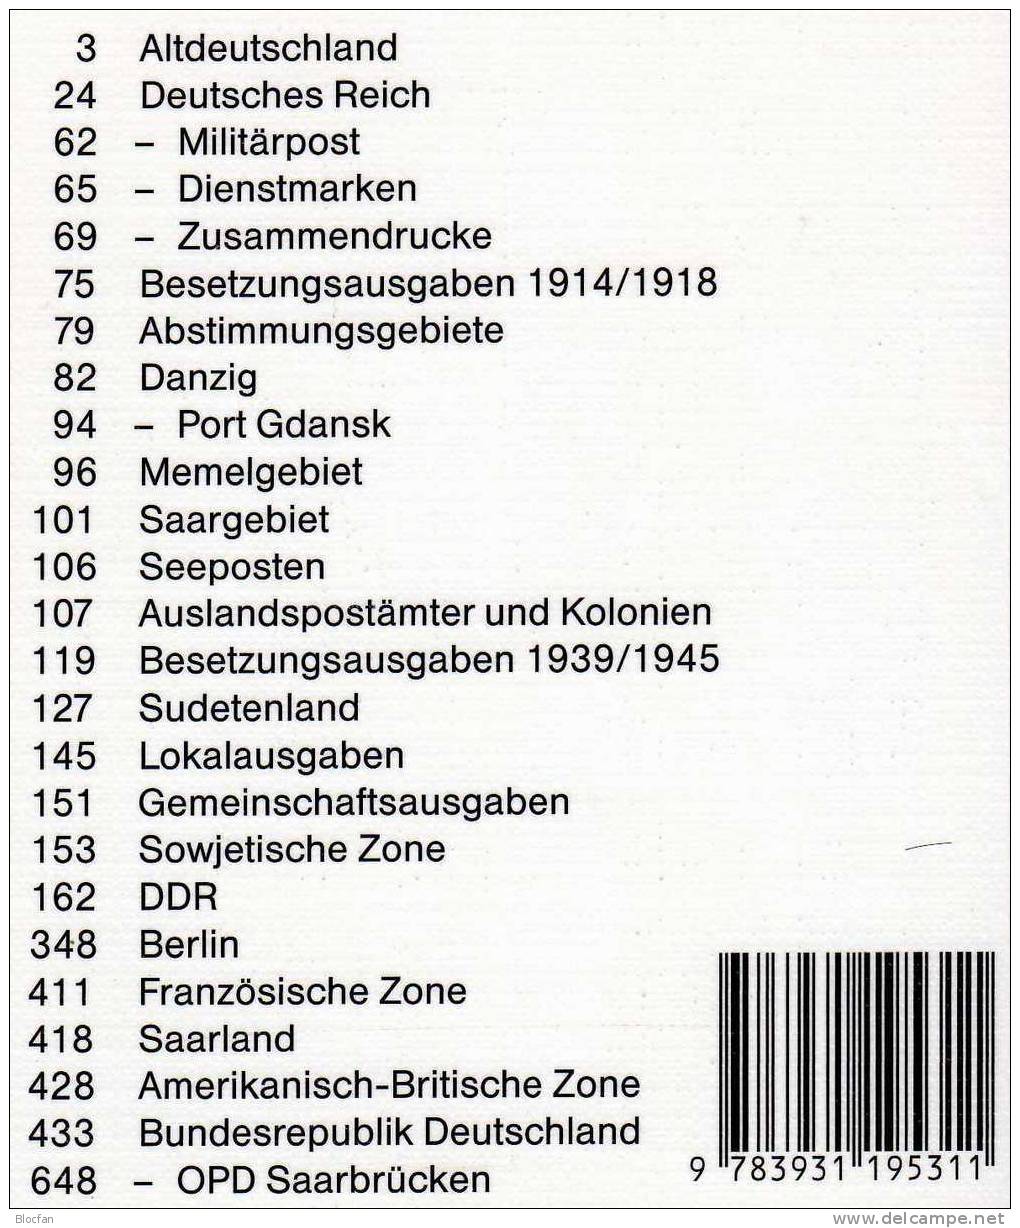 Briefmarken Katalog 2003 Antiquarisch 12€ Philex Altdeutschland Deutsches Reich Saar Danzig Memel SBZ DDR Berlin BRD - Germania